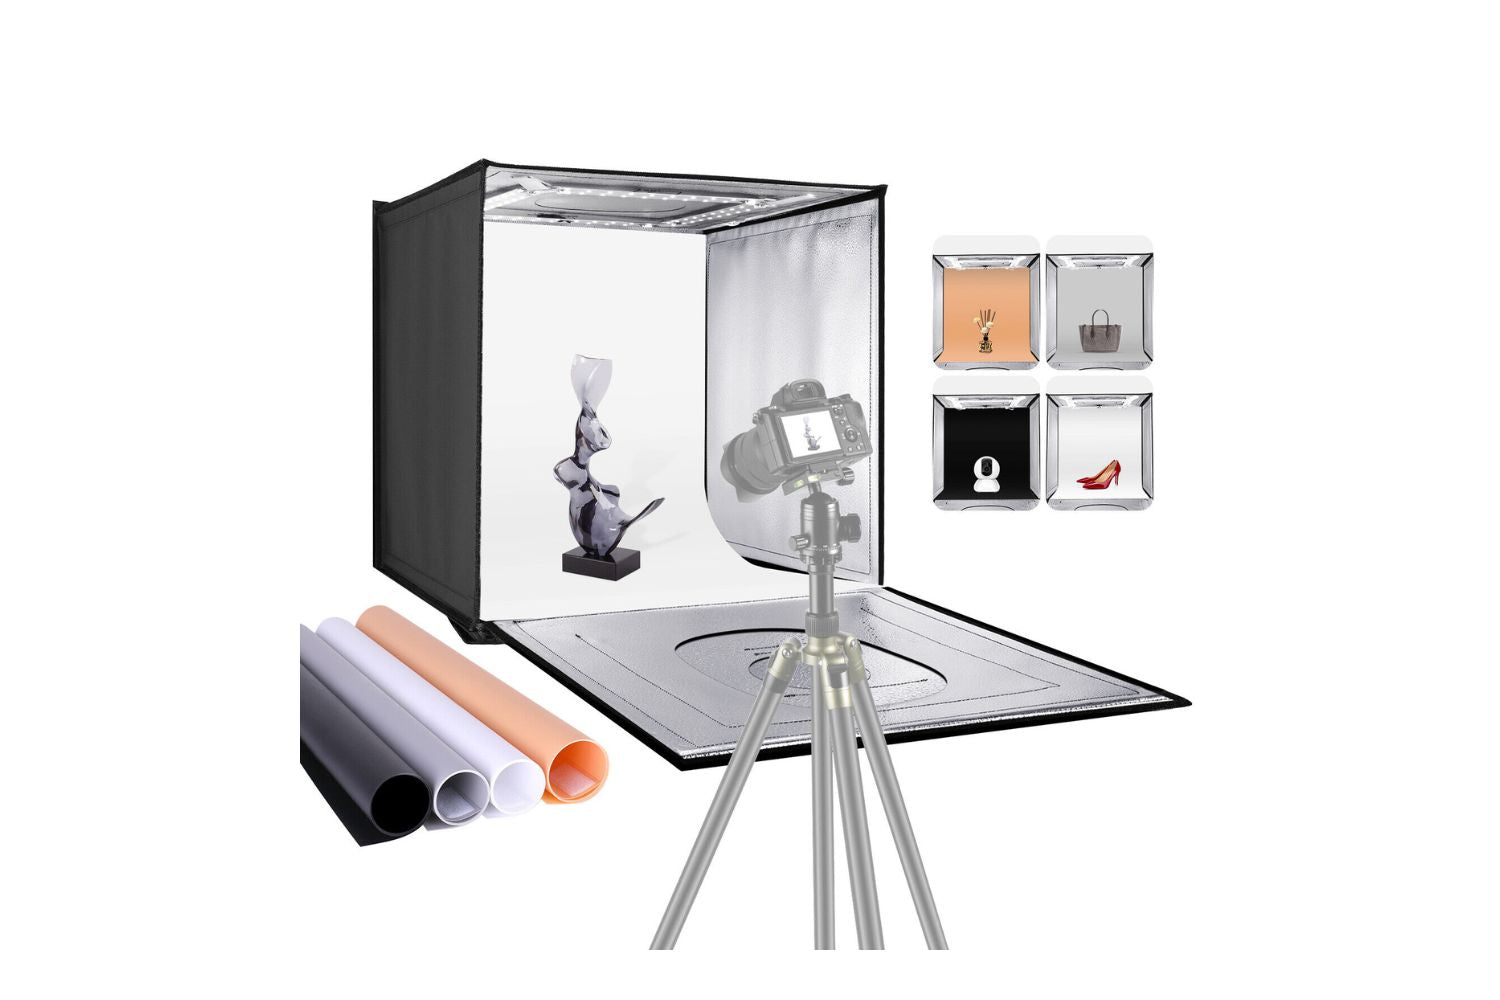 Neewer Professional Photo Light Box Kit